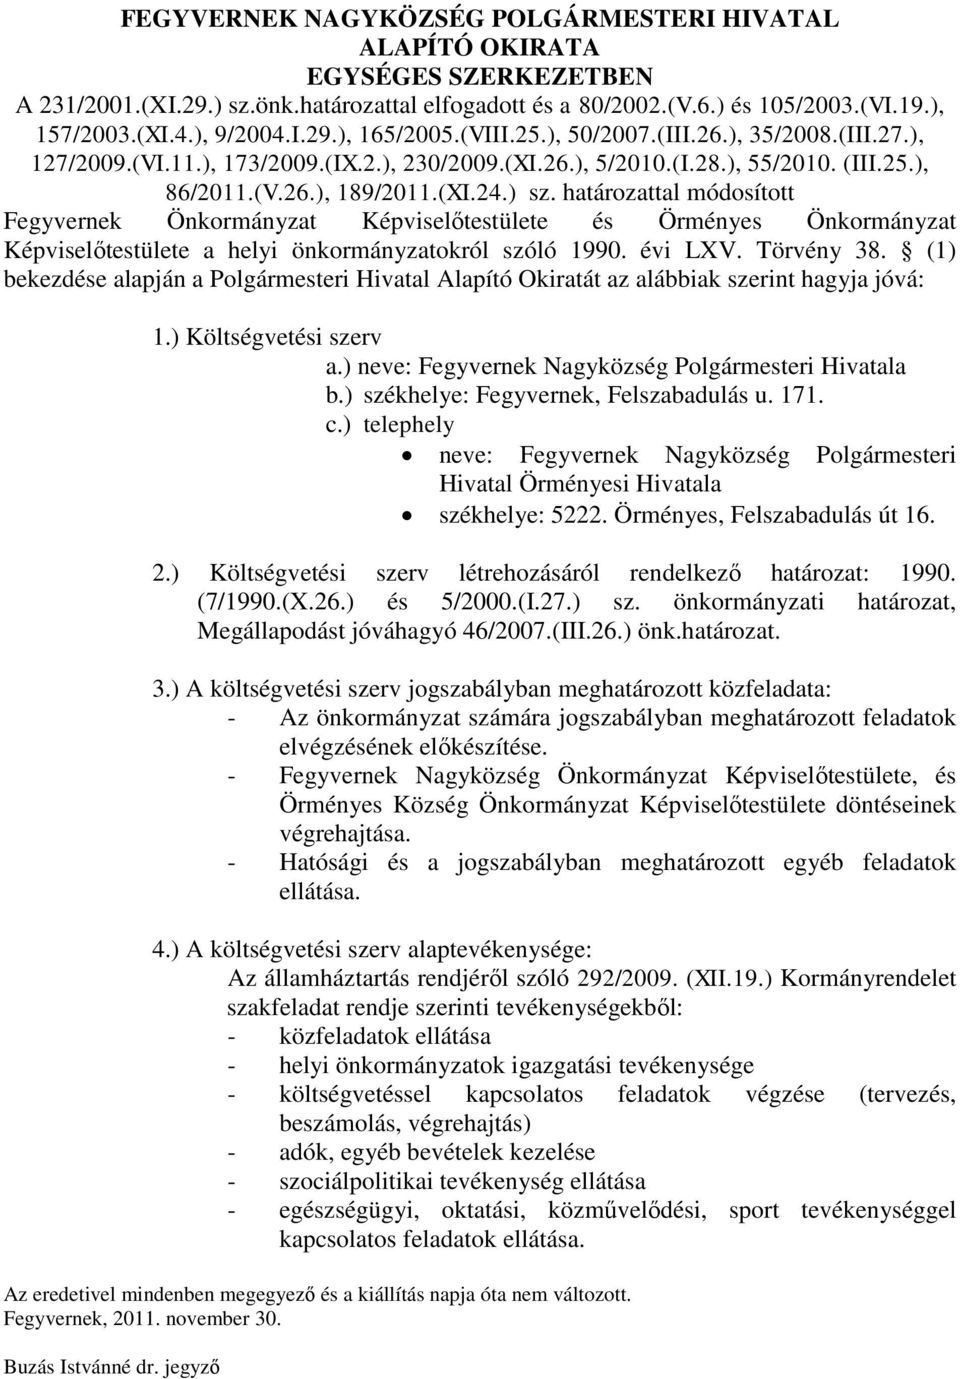 határozattal módosított Fegyvernek Önkormányzat Képviselőtestülete és Örményes Önkormányzat Képviselőtestülete a helyi önkormányzatokról szóló 1990. évi LXV. Törvény 38.